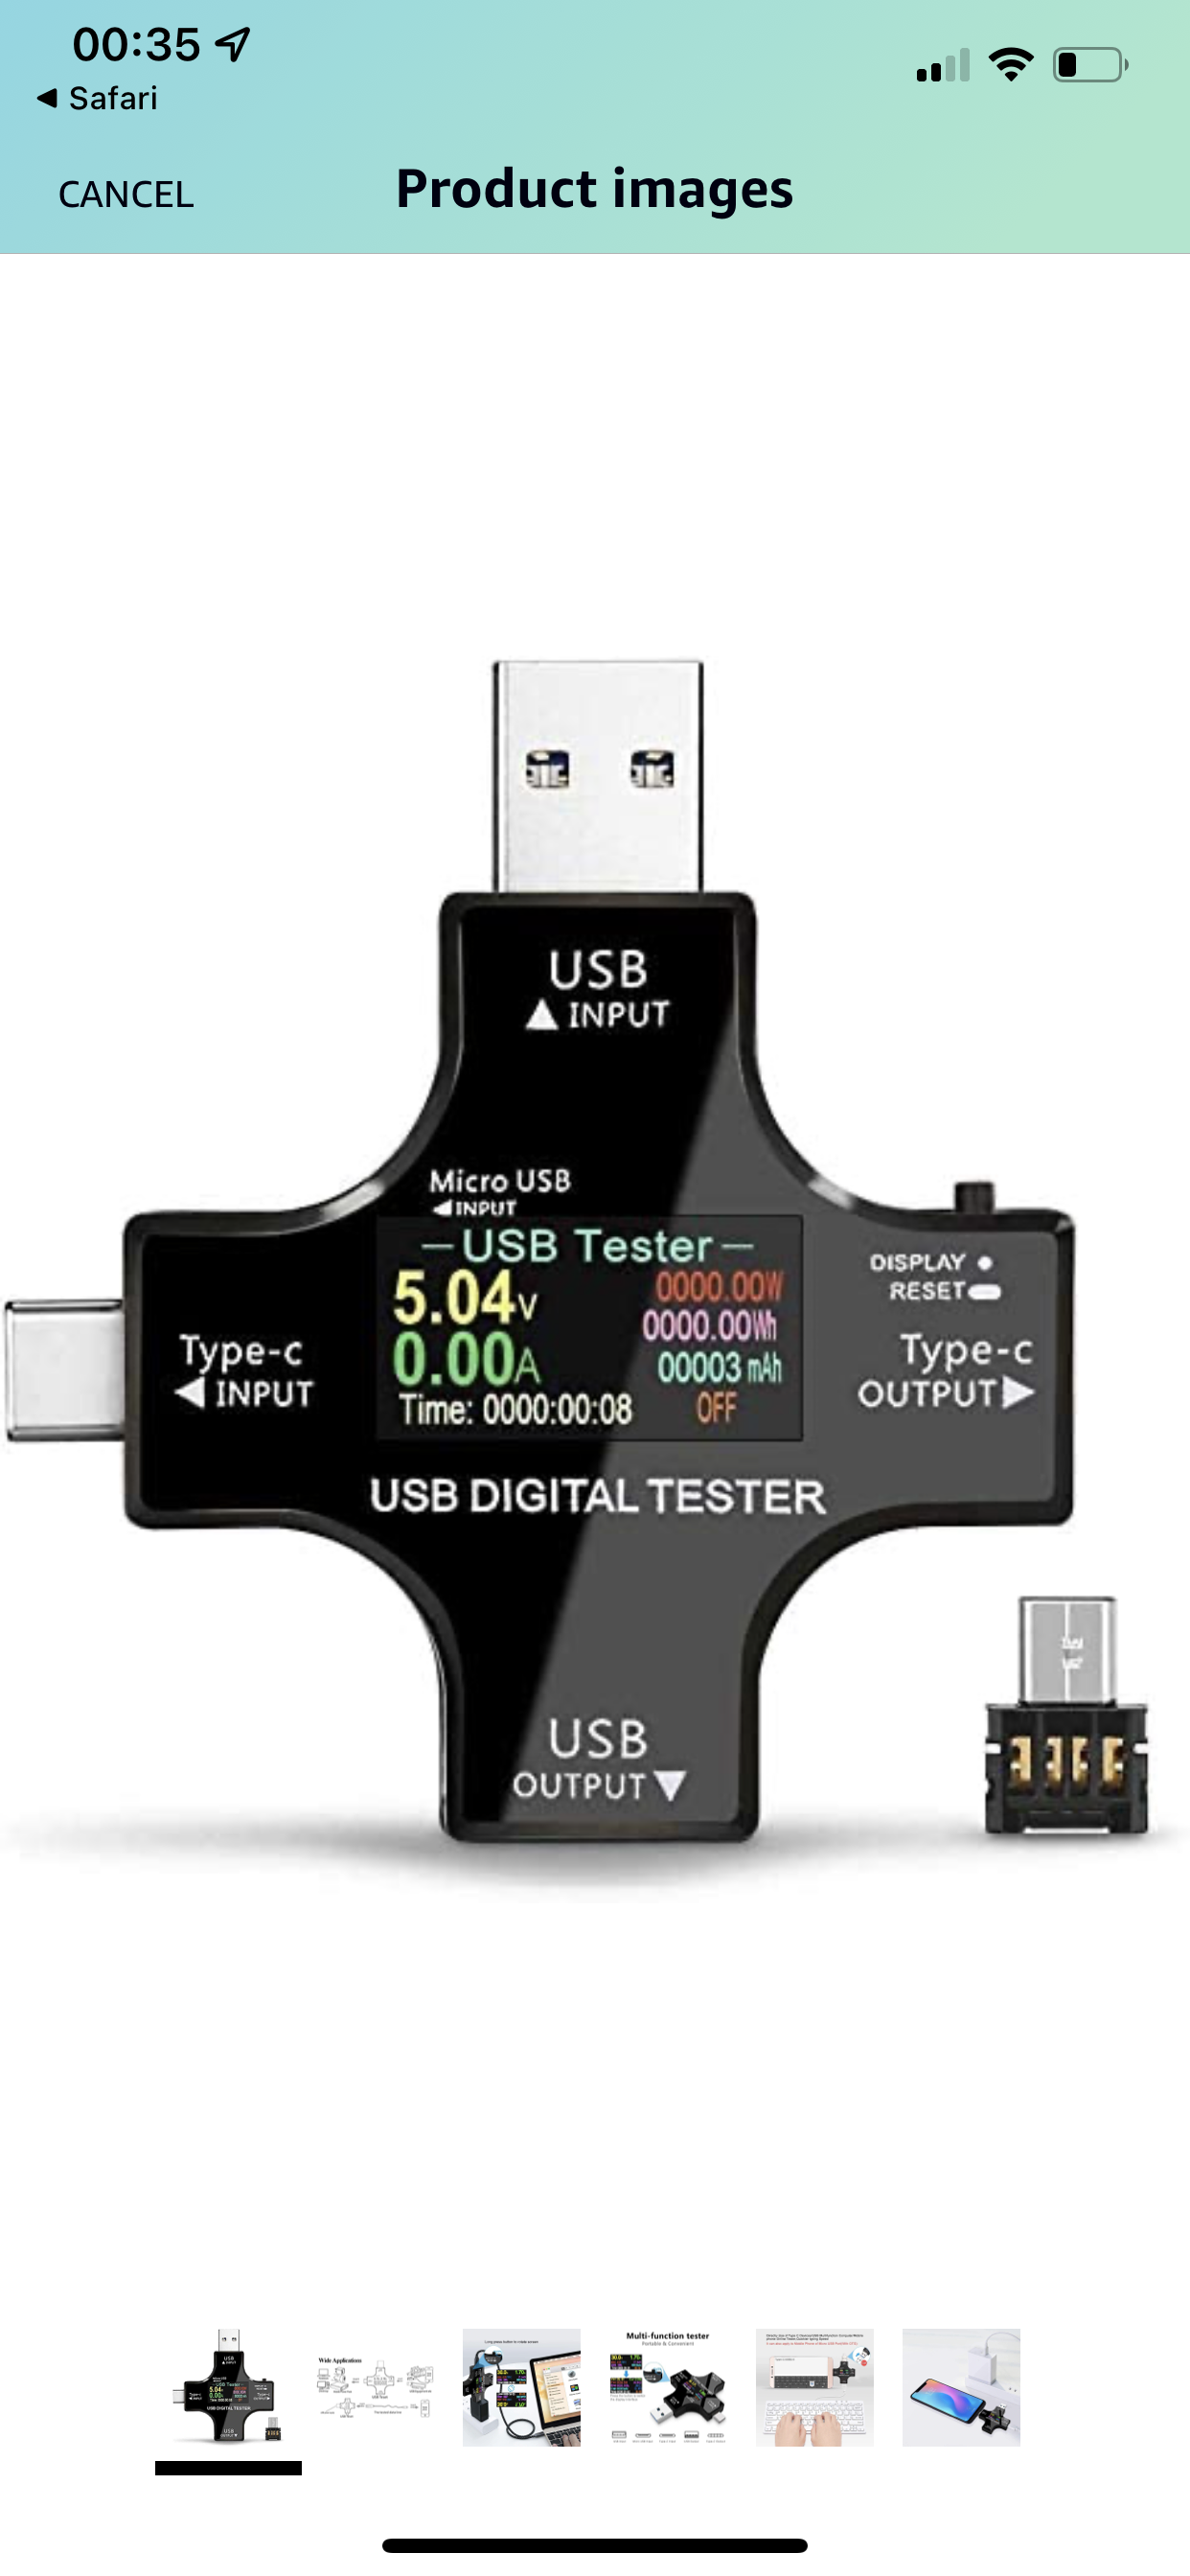 Type-C USB